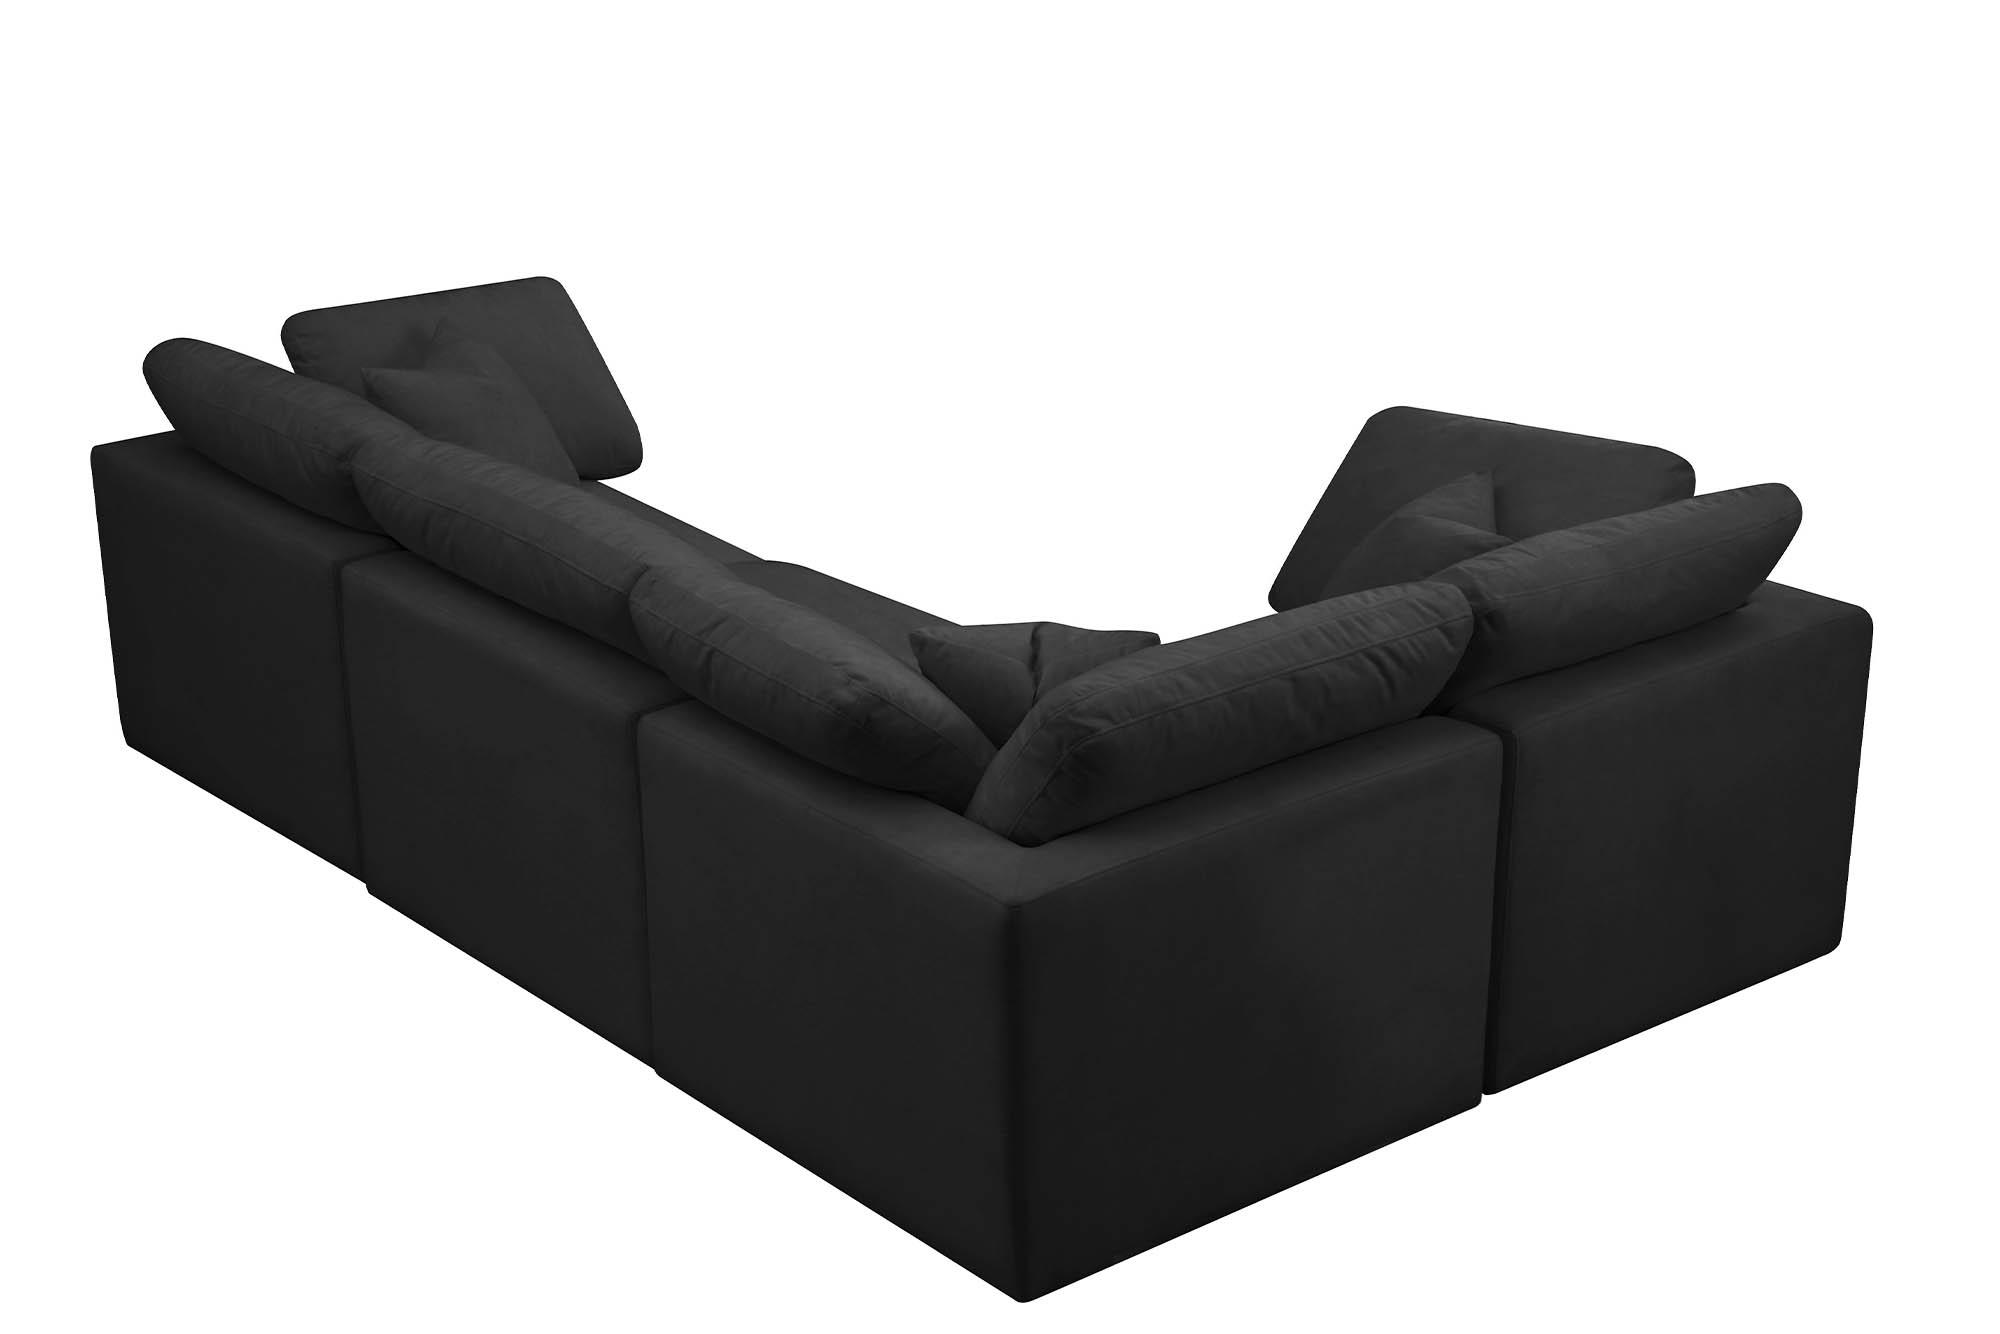 

    
Meridian Furniture 602Black-Sec4C Modular Sectional Sofa Black 602Black-Sec4C
